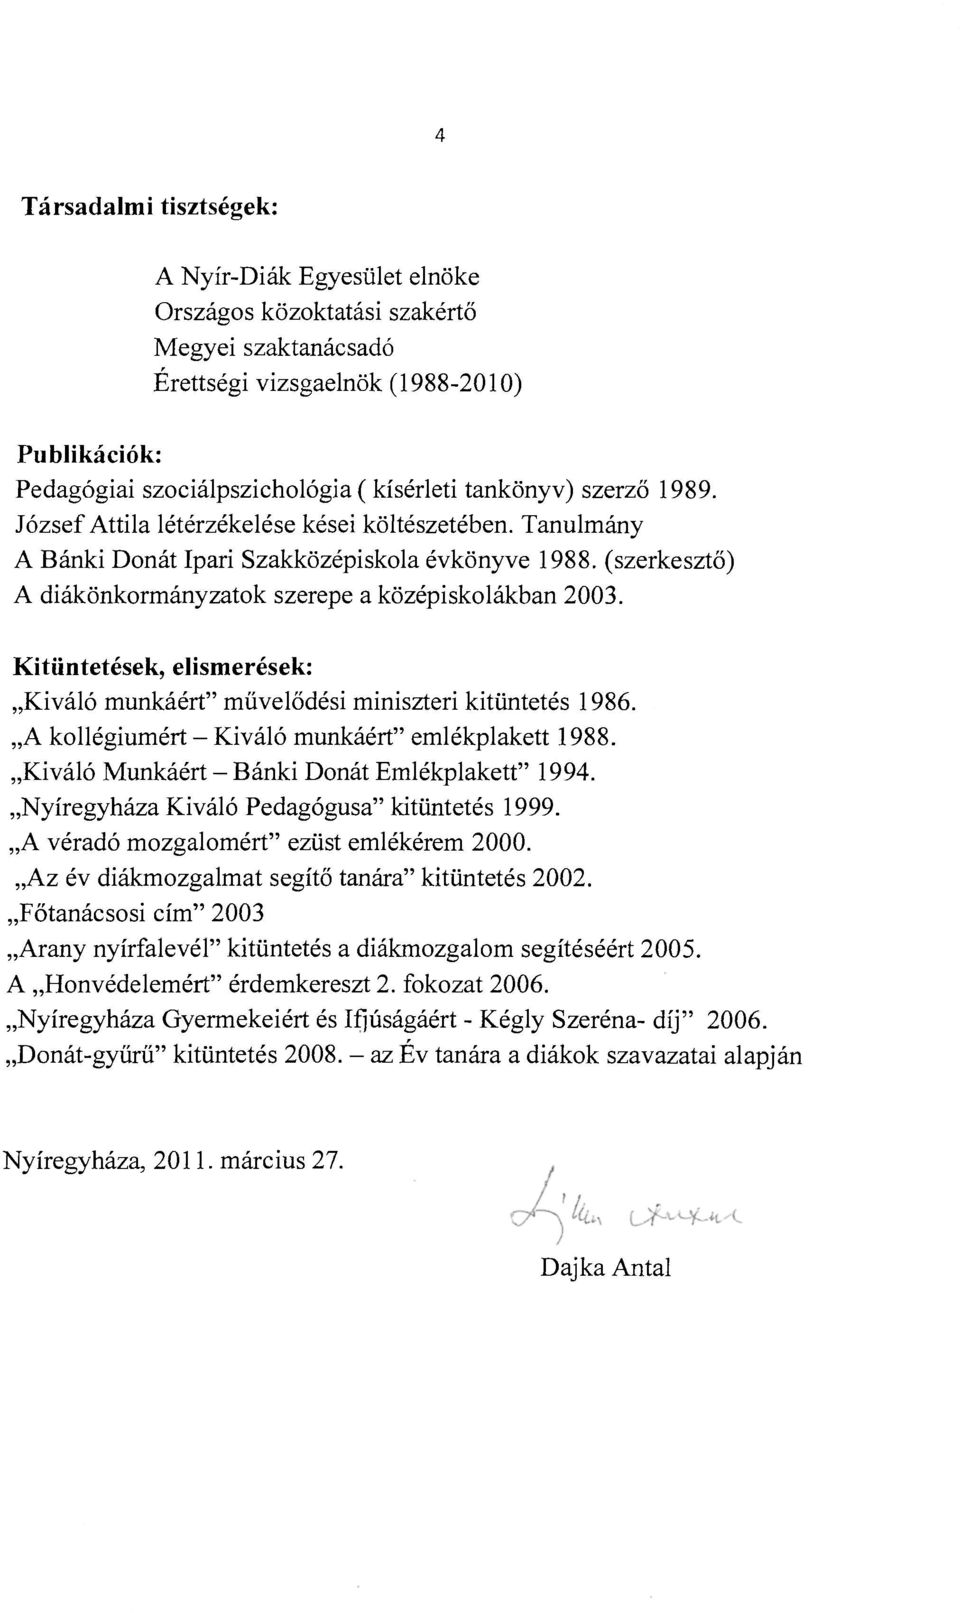 Kitüntetések, elismerések: Kiváló munkáért" művelődési miniszteri kitüntetés 1986. A kollégiumért - Kiváló munkáért" emlékplakett 1988. Kiváló Munkáért - Bánki Donát Emlékplakett" 1994.